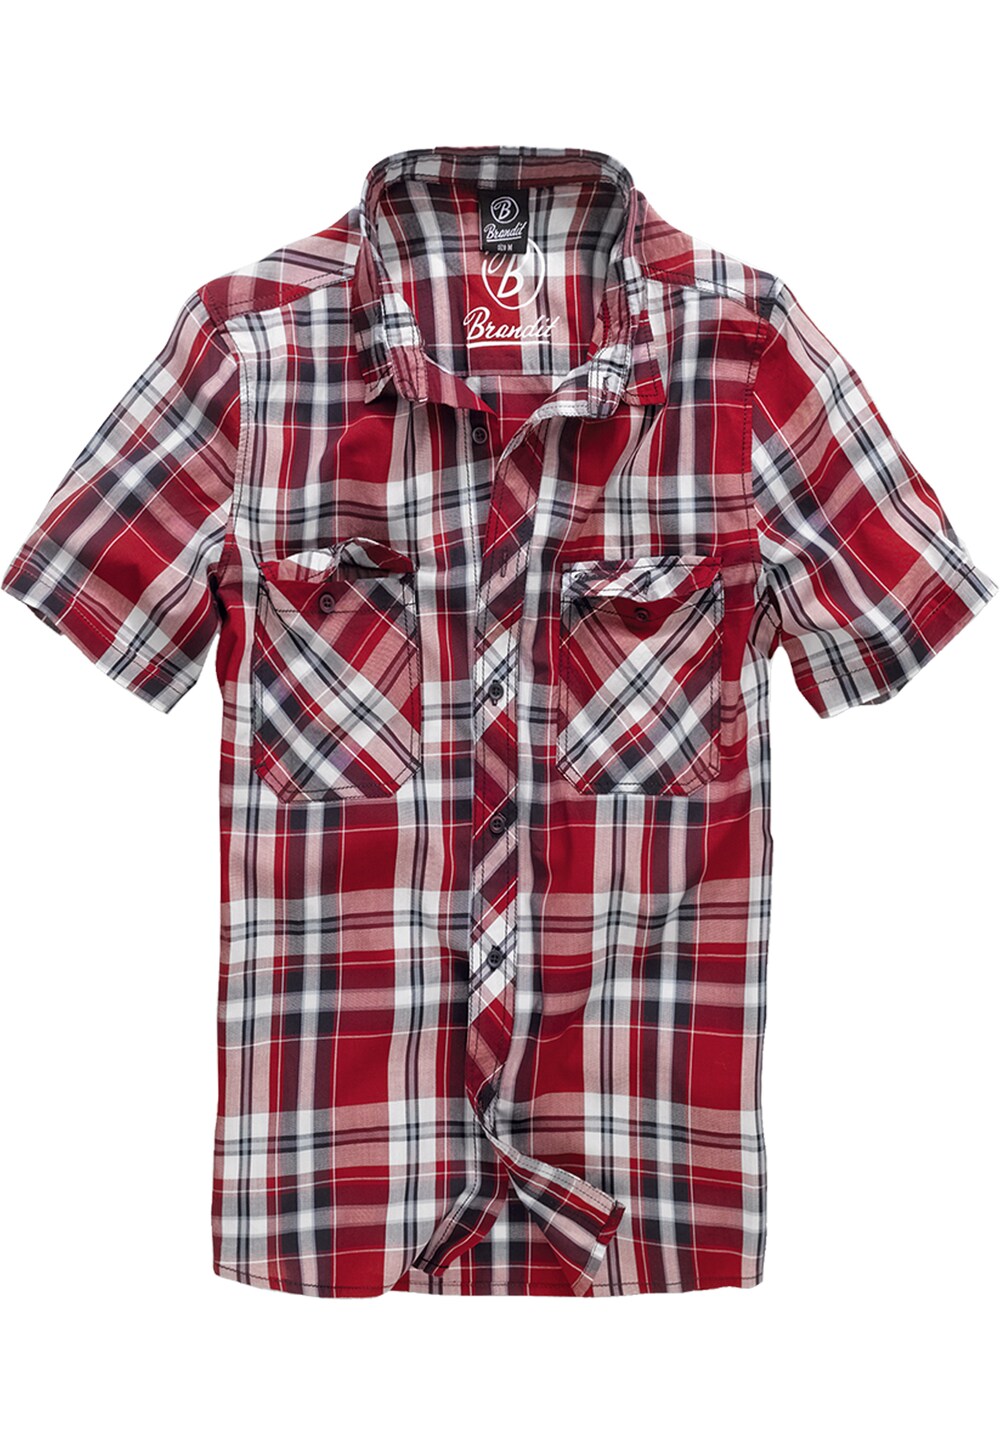 Рубашка на пуговицах стандартного кроя Brandit Roadstar, винно-красный/карминно-красный шорты y 3 ft винно красный